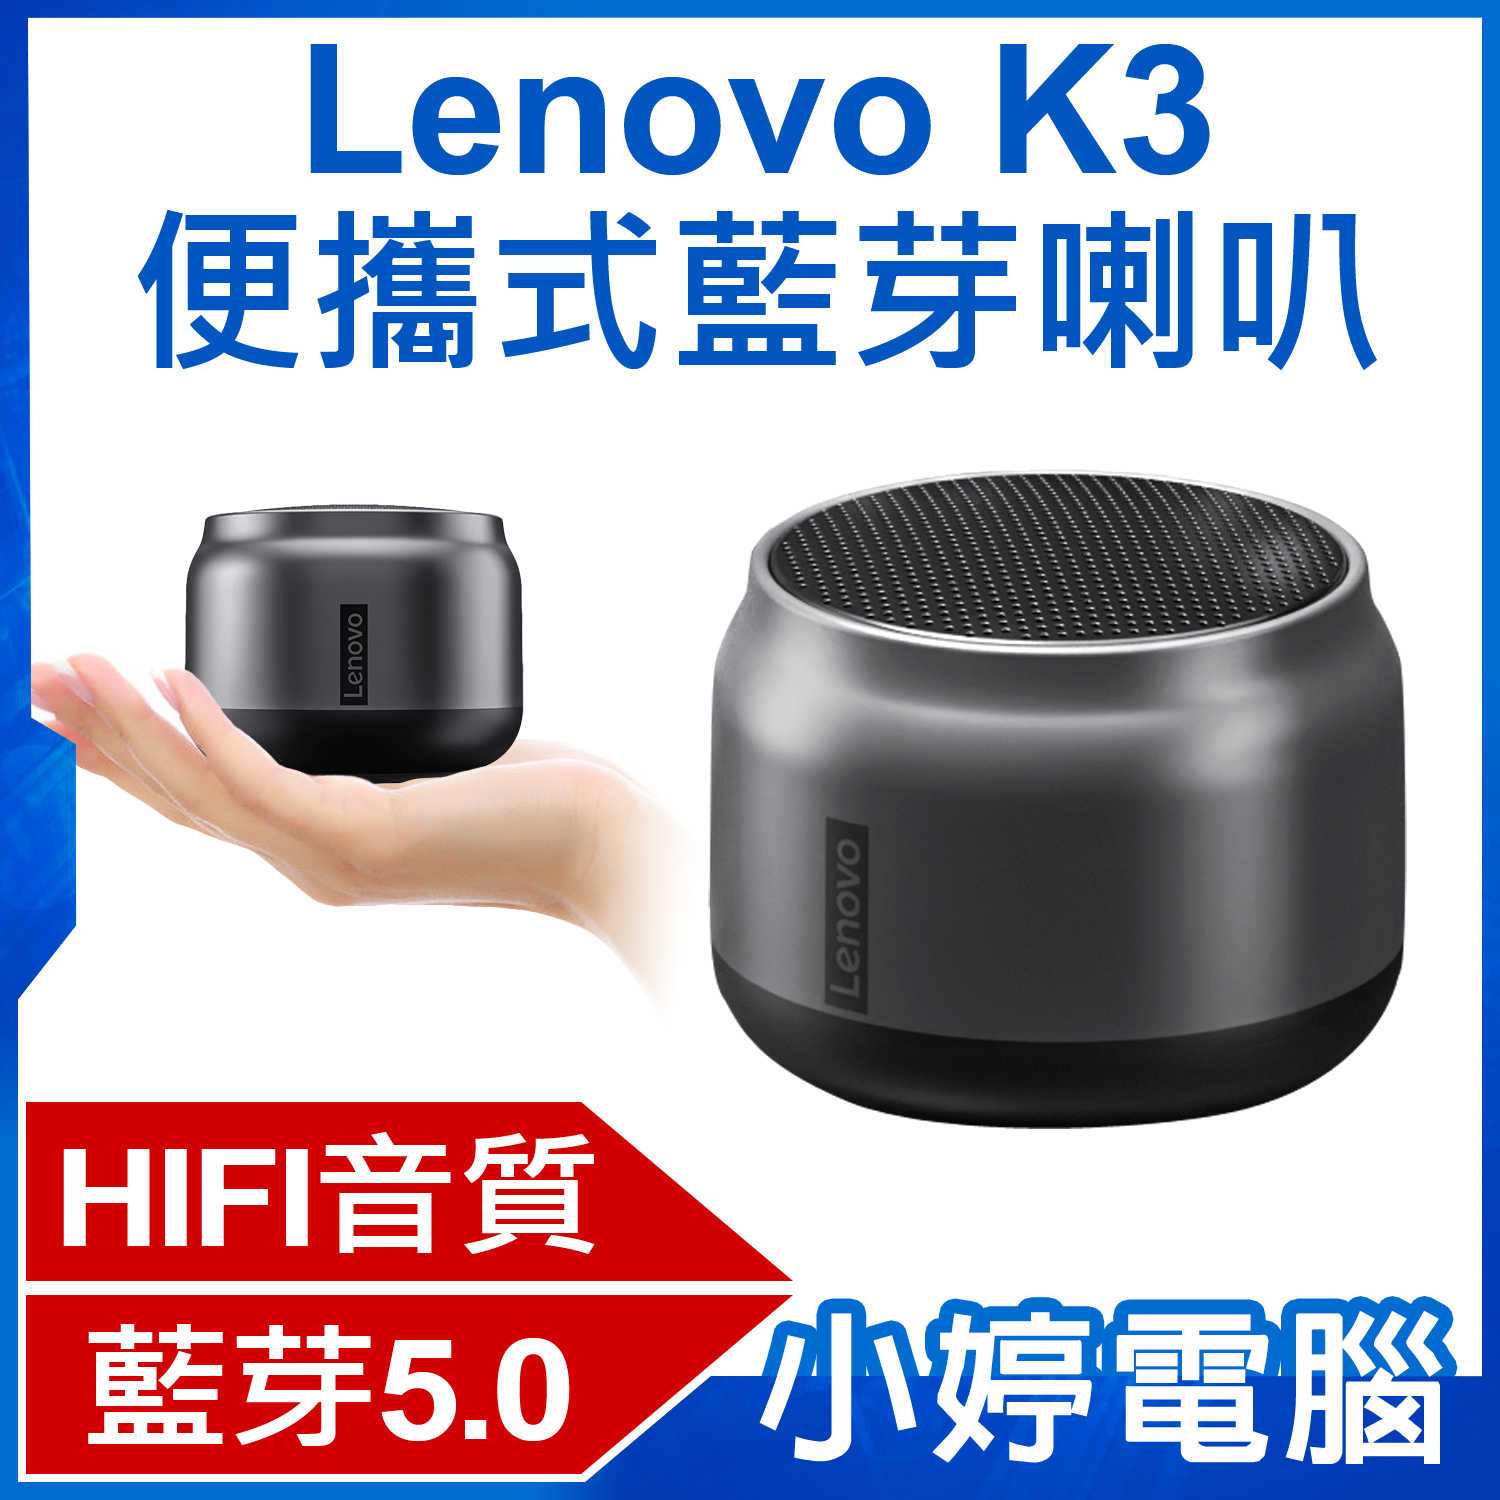 【小婷電腦】Lenovo K3 便攜式藍芽喇叭 TWS雙喇叭串聯 HIFI音質 免持通話 迷你輕巧 持久續航